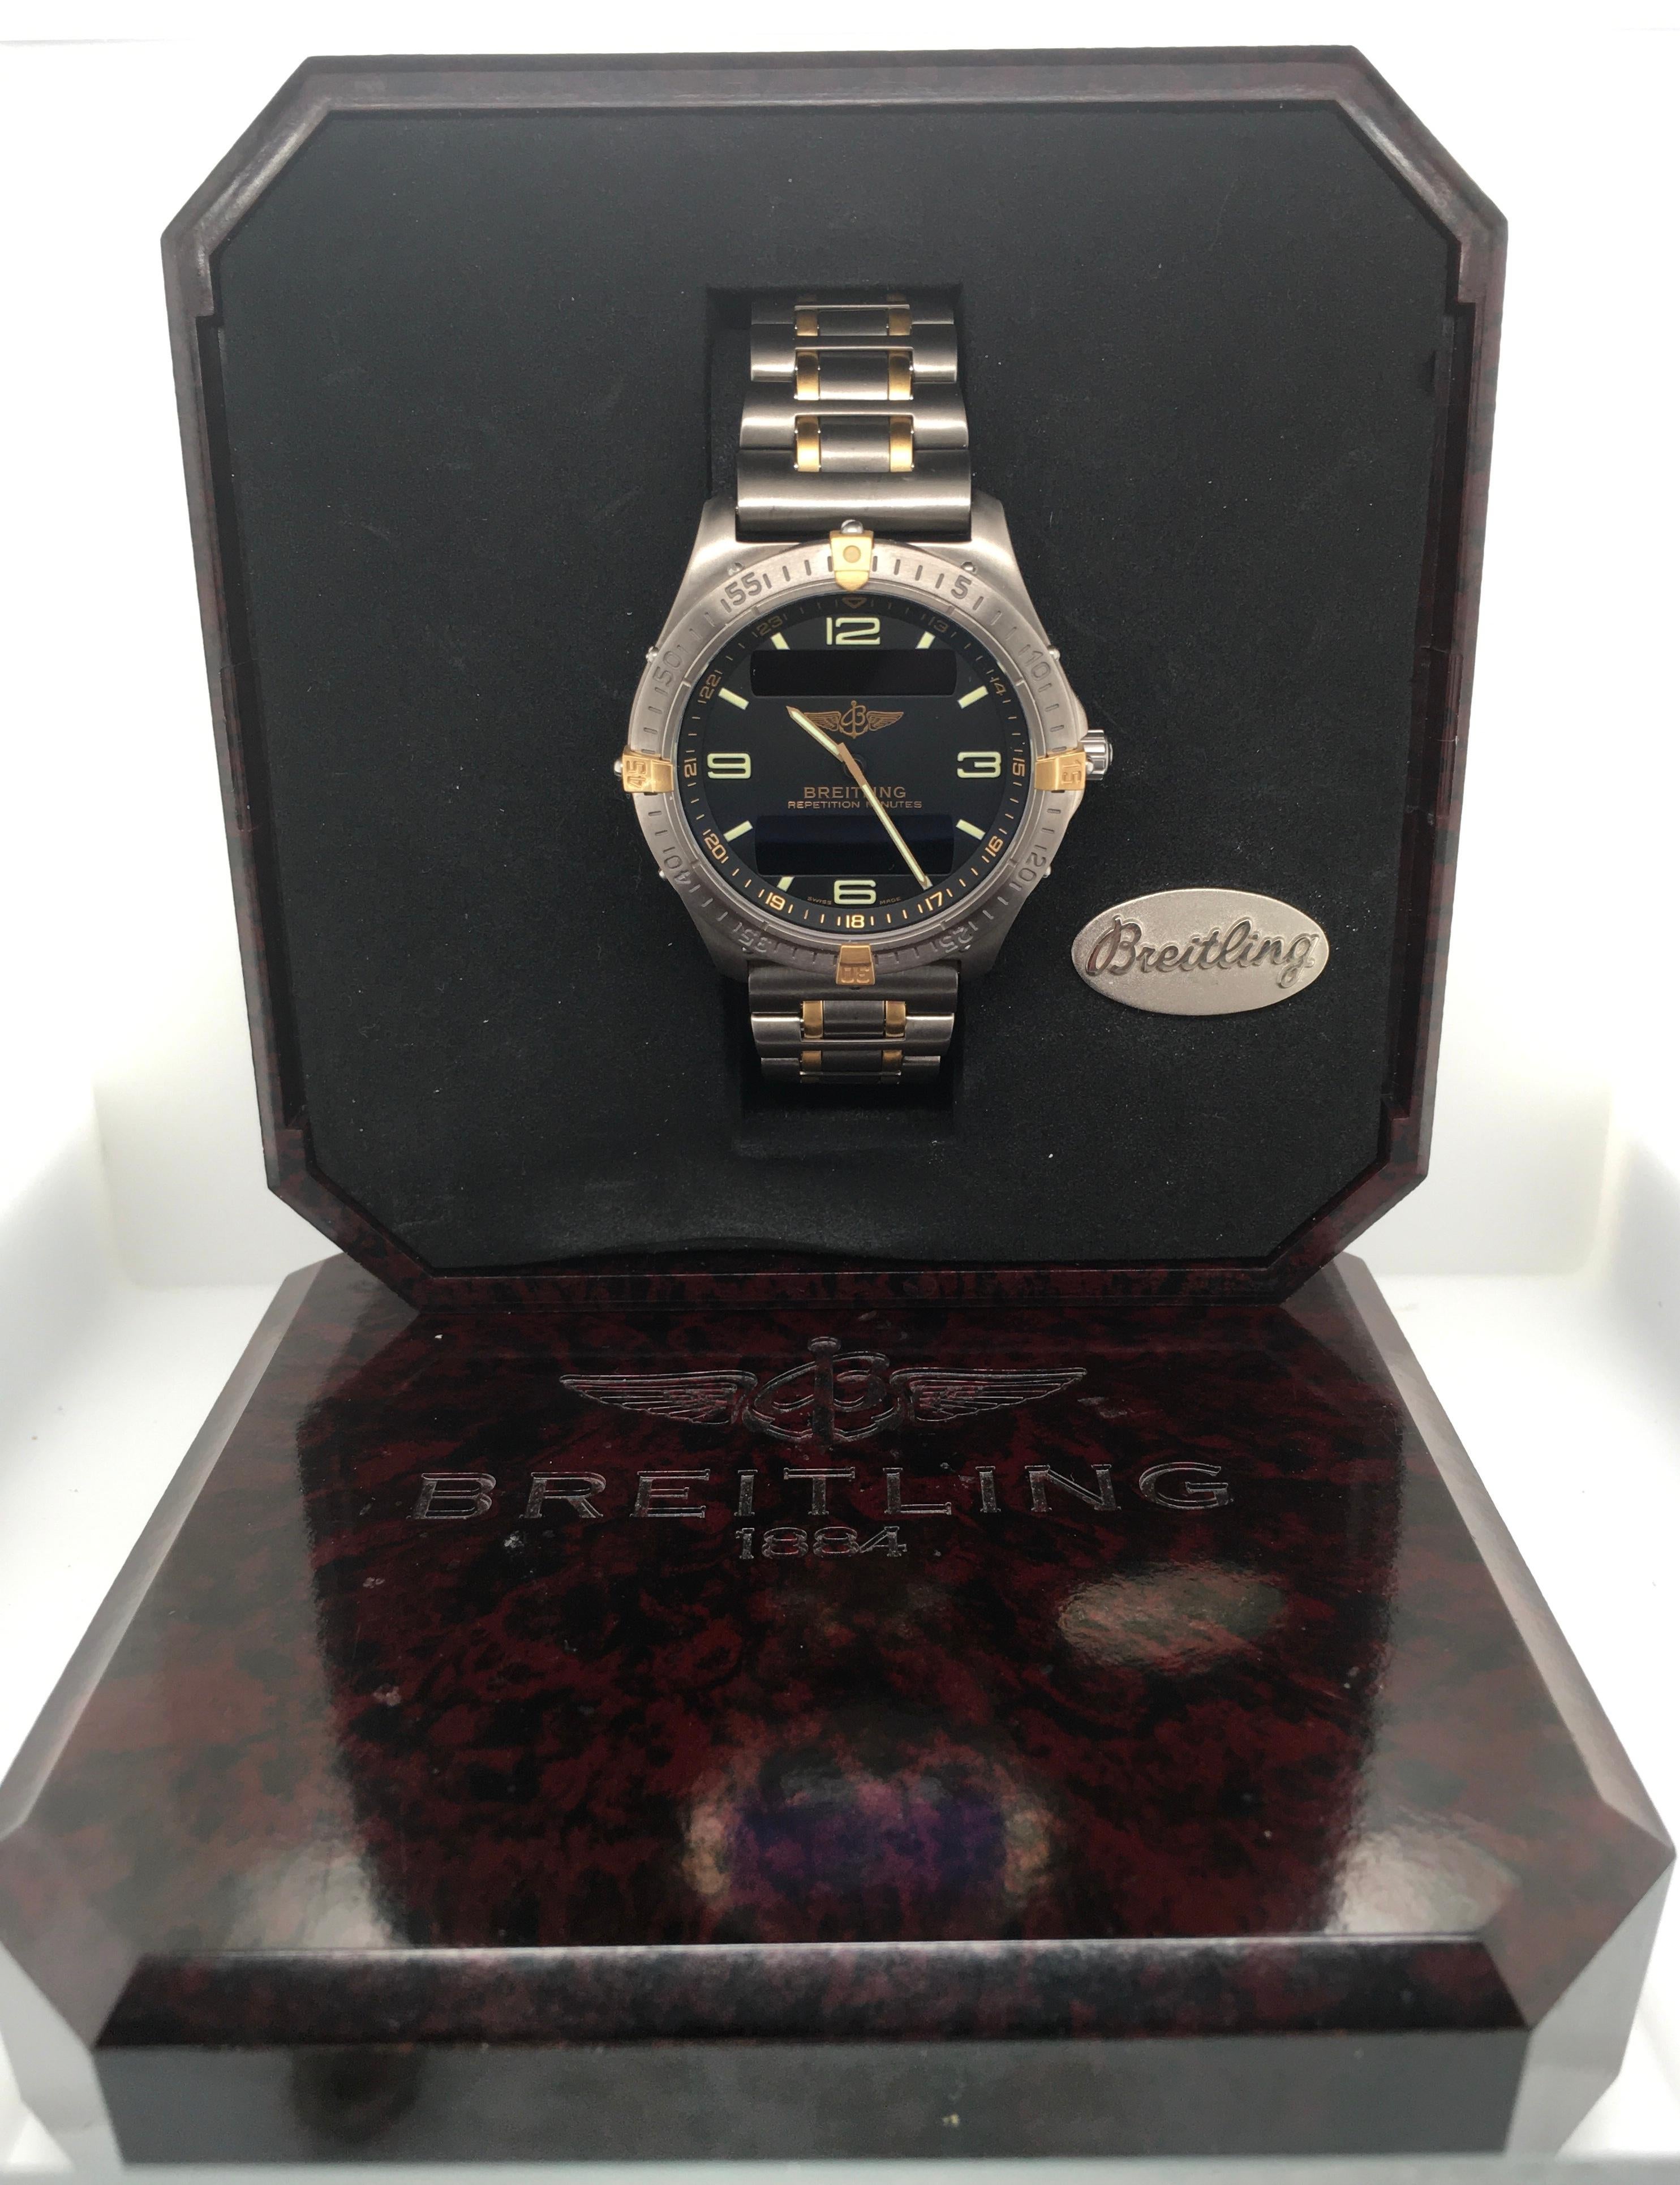 Breitling Aerospace 100m Titanium Case & Bracelet W/ Black Dial Chronograph  For Sale 3